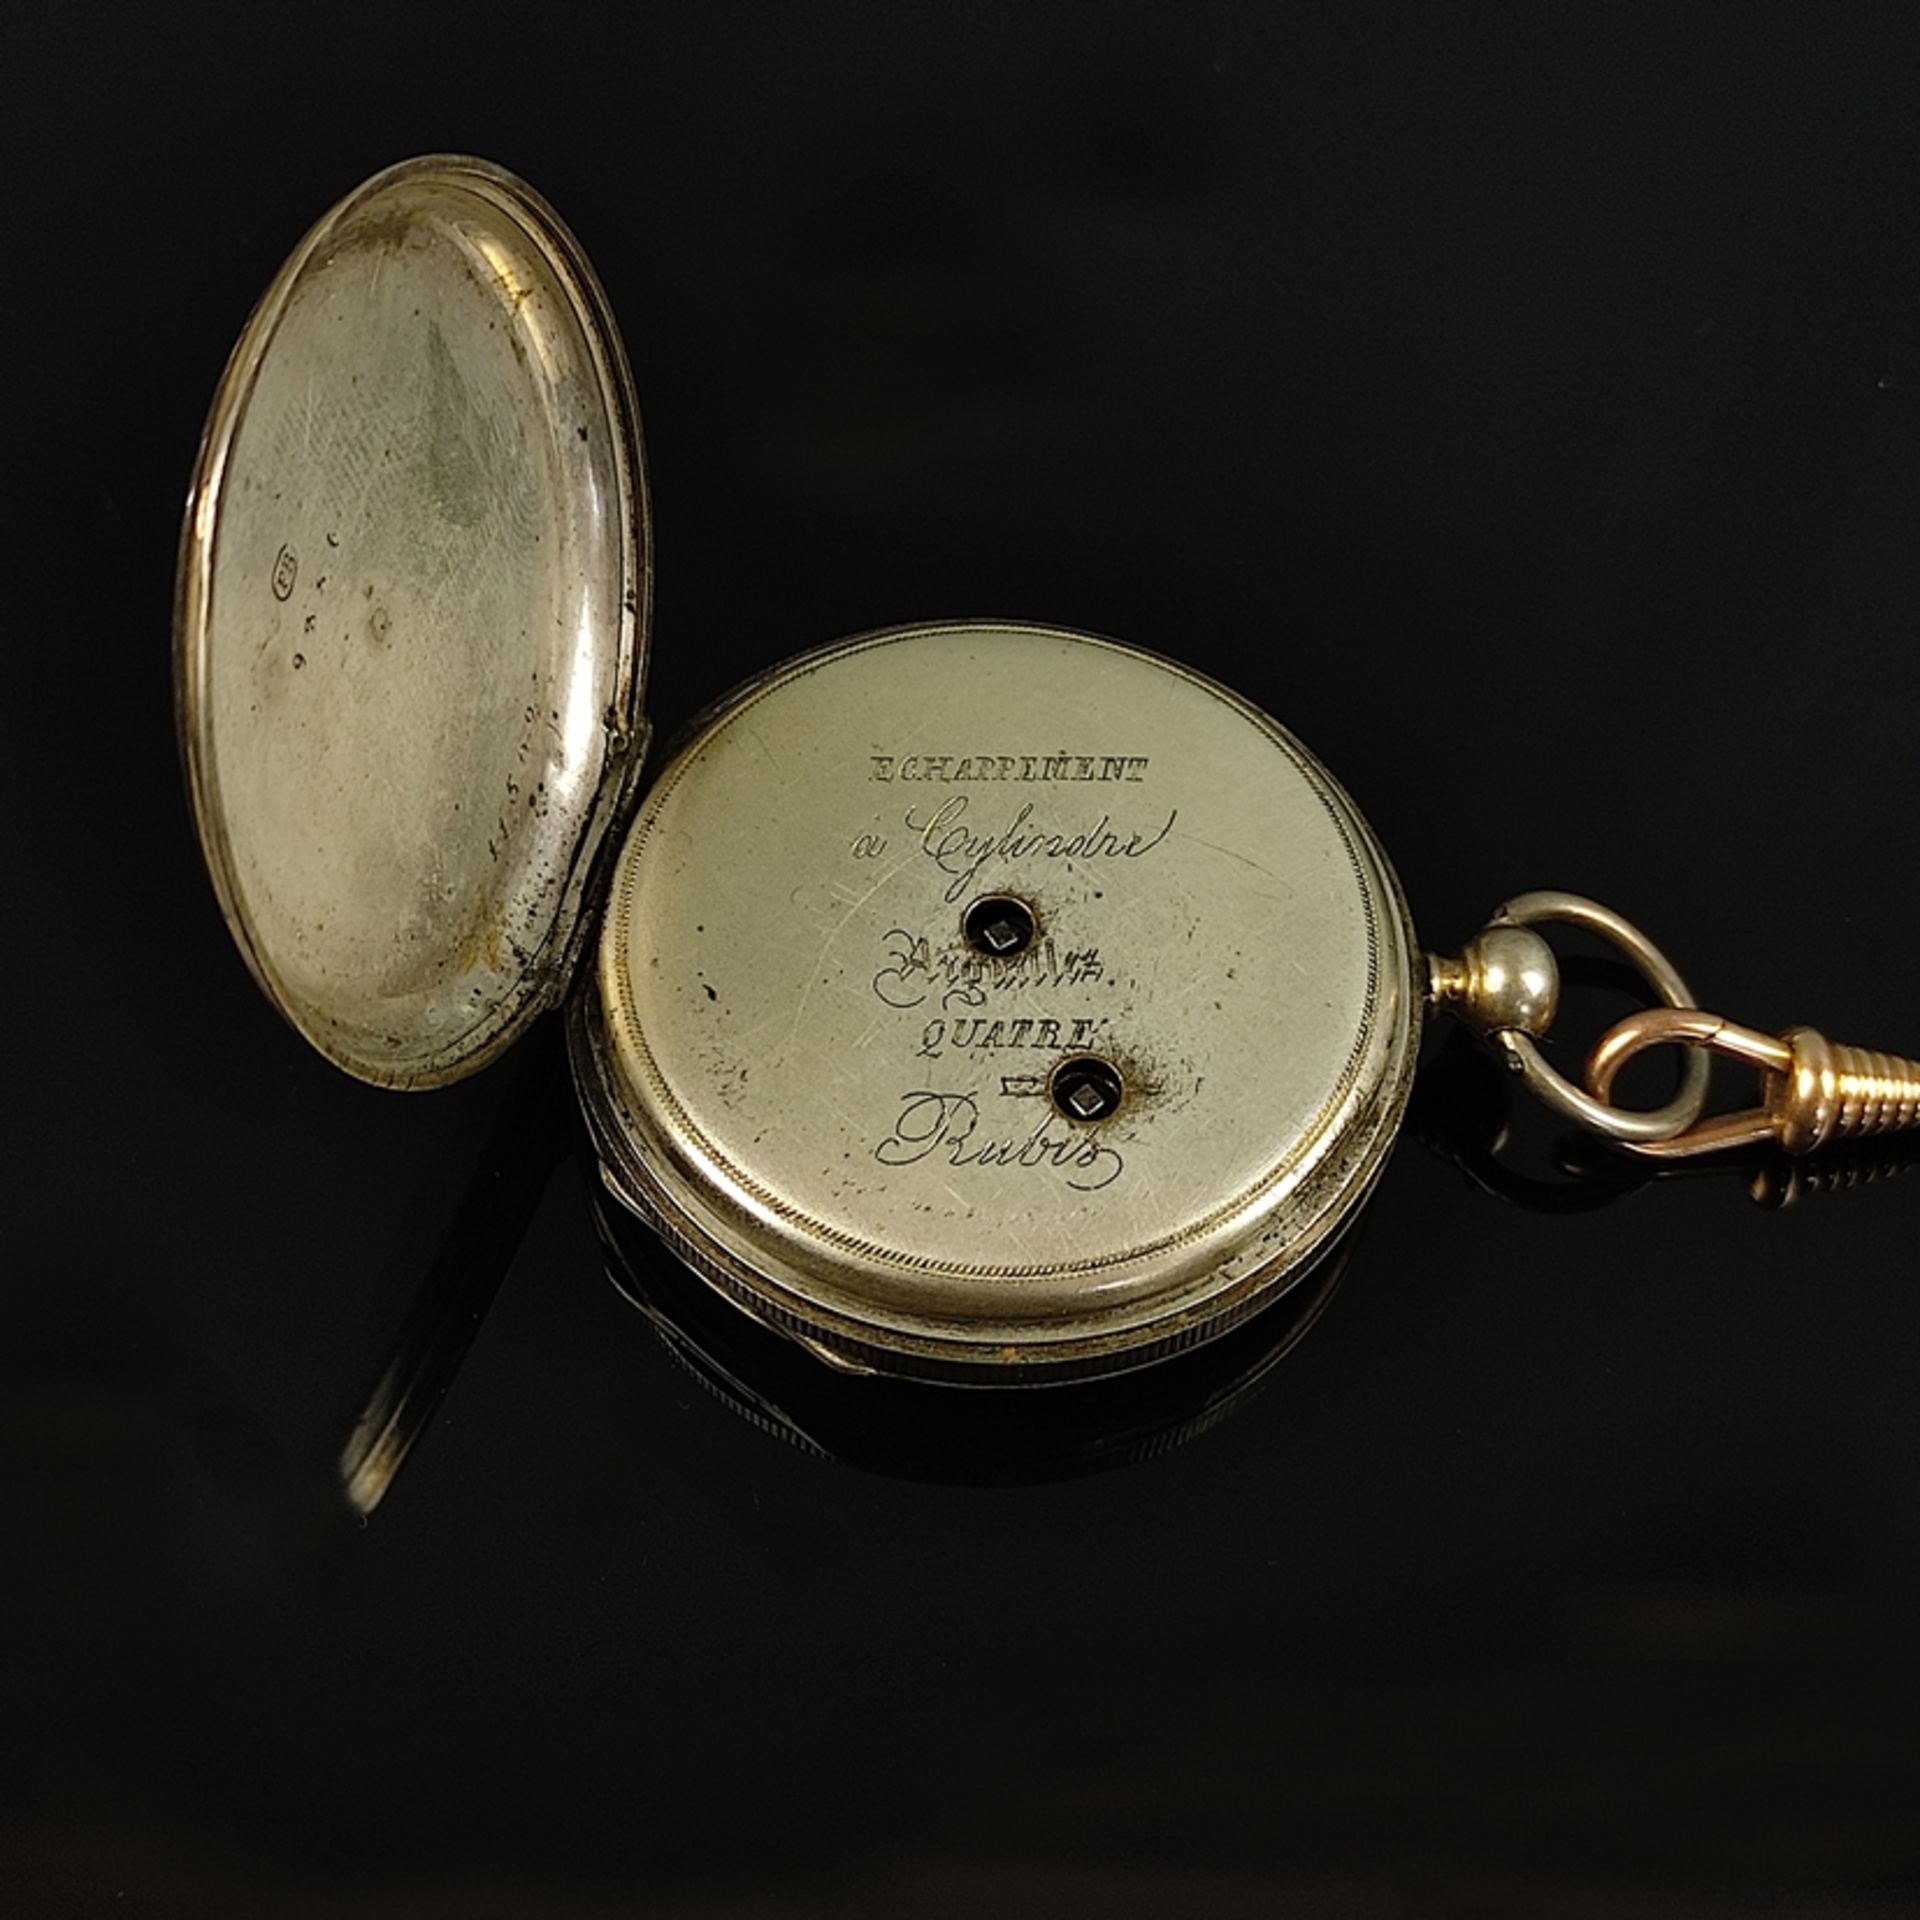 Taschenuhr, Schlüsseluhr, rundes Ziffernblatt mit römischen Ziffern, mittig feine polychrome Ausges - Bild 2 aus 4